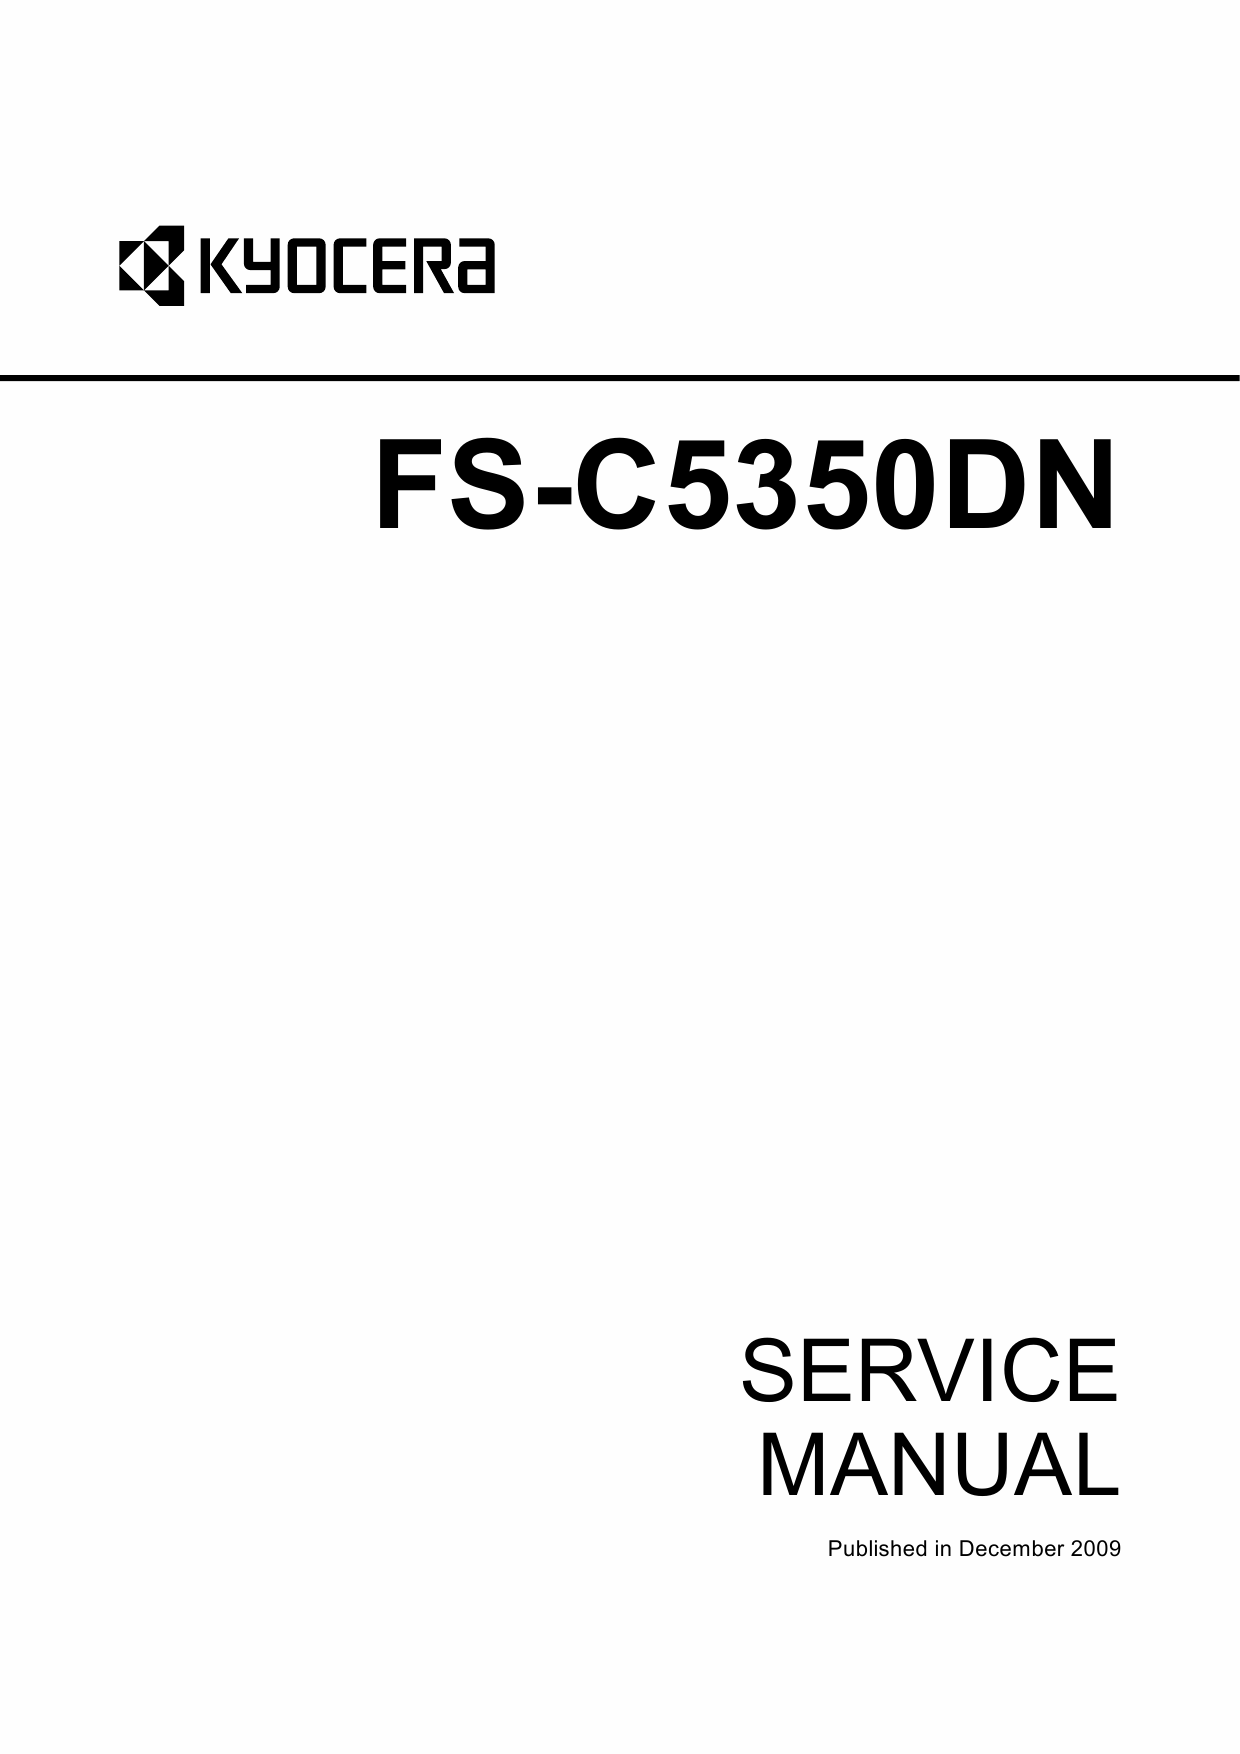 KYOCERA ColorLaserPrinter FS-C5350DN Parts and Service Manual-1